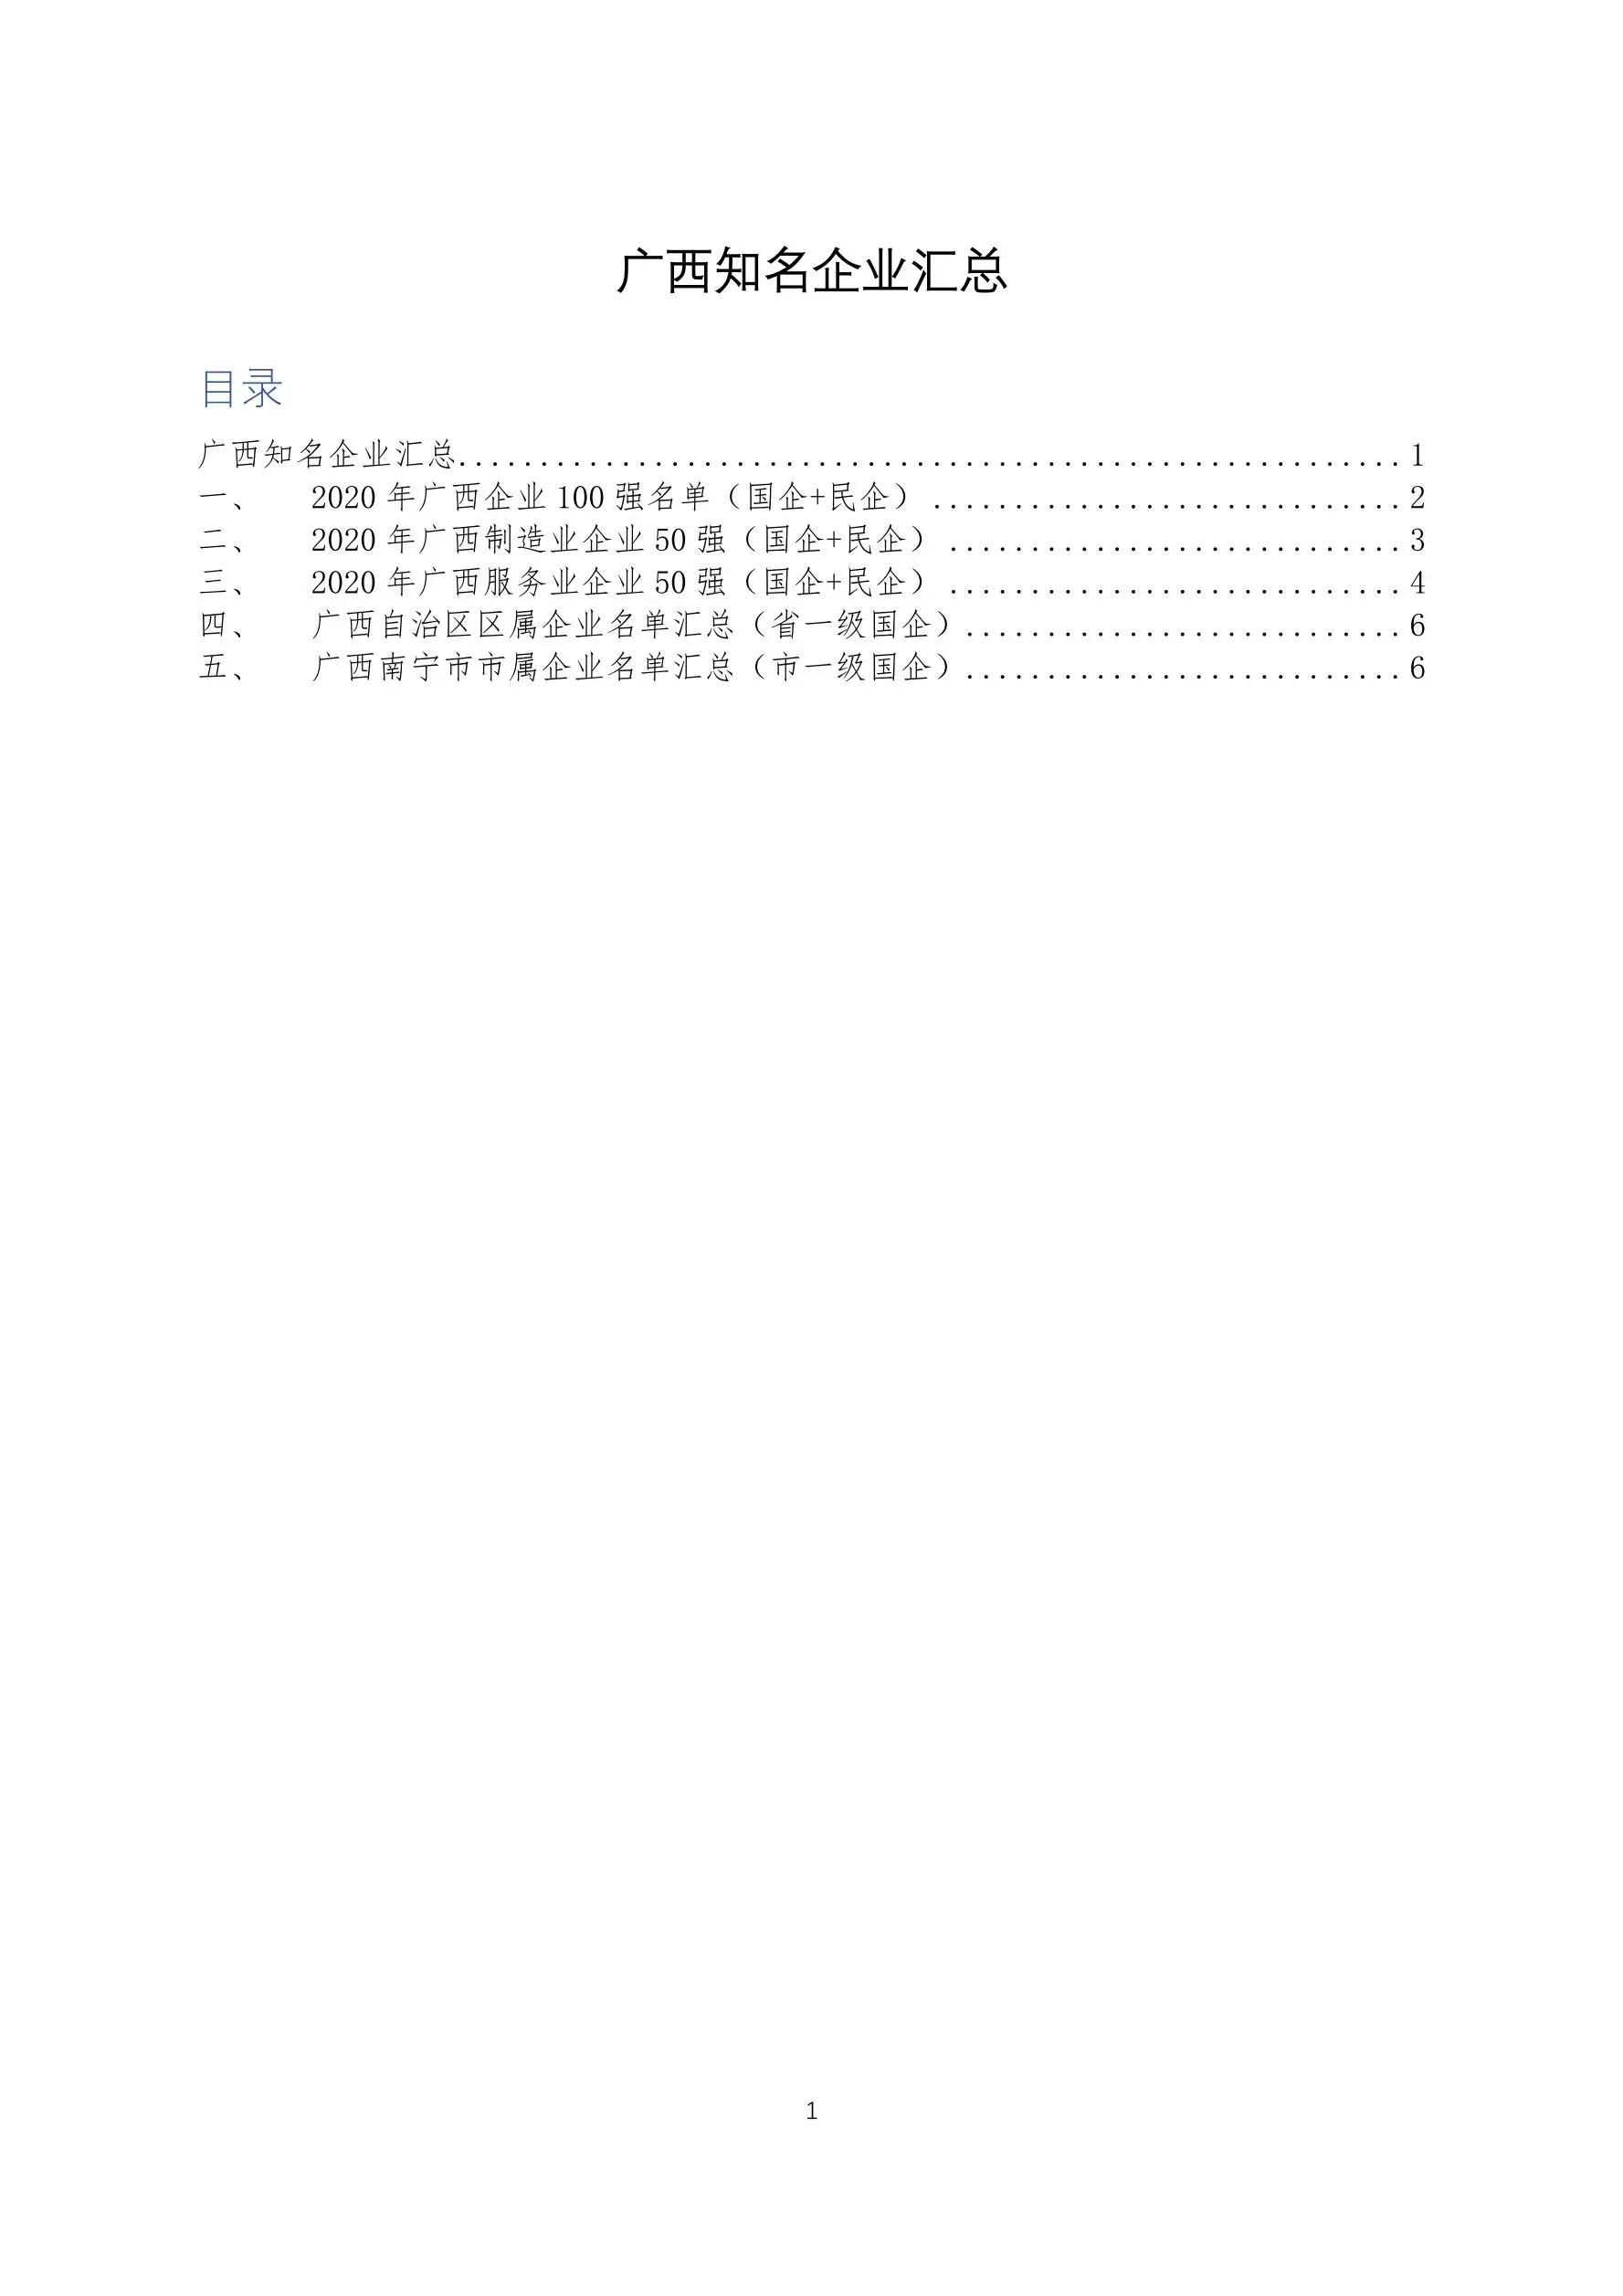 2020年广西知名企业汇总表（国企+民企）插图1